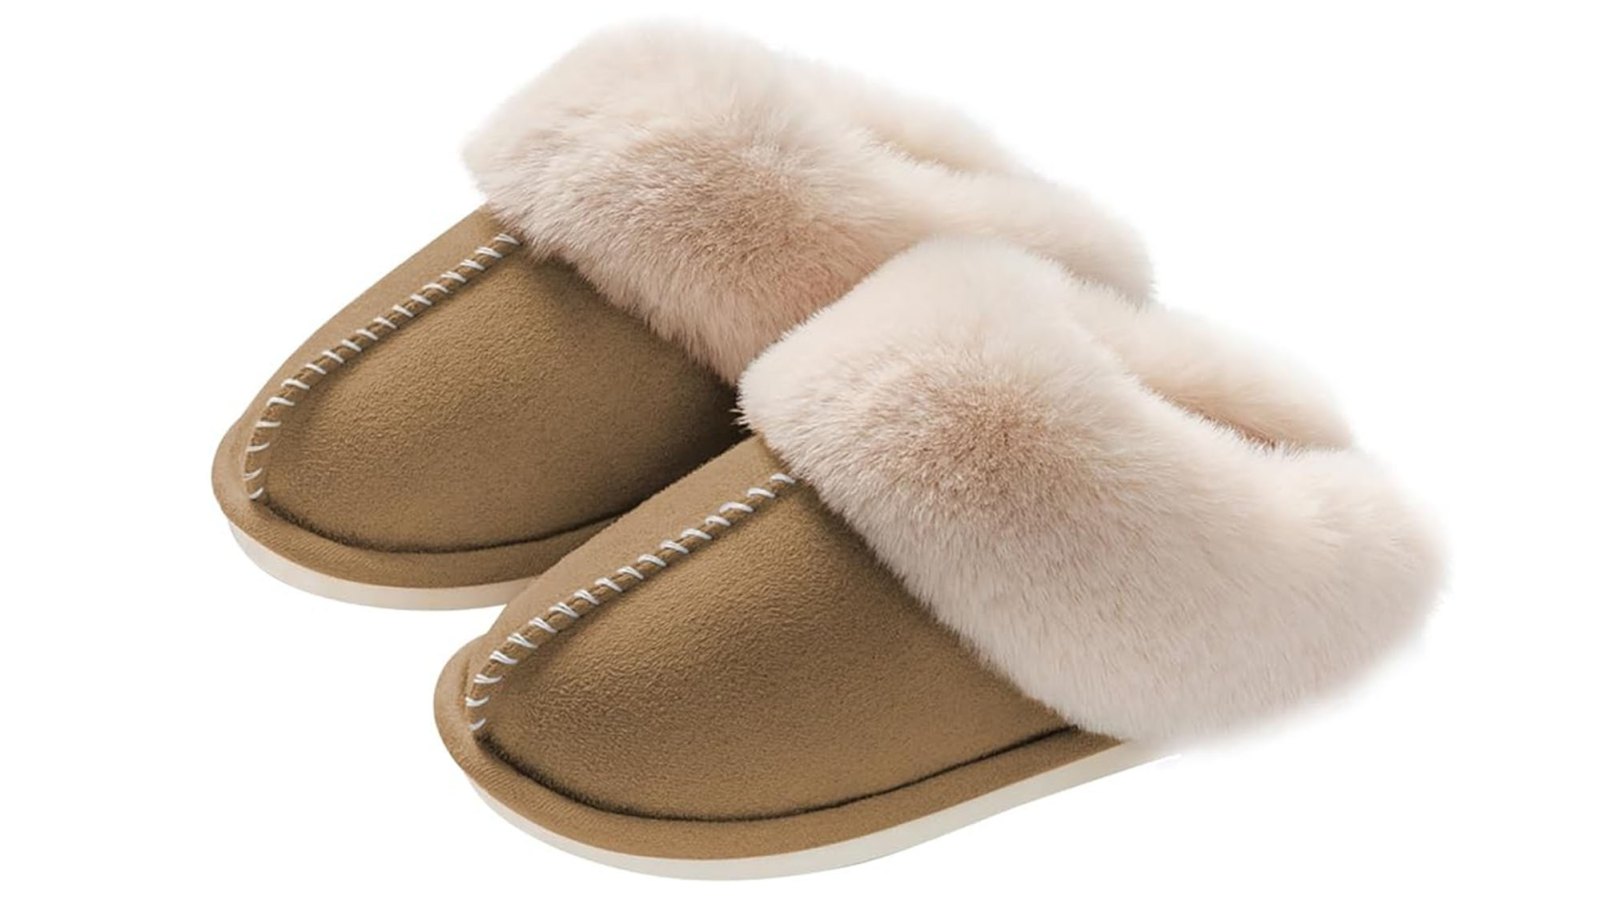 Ugg lookalike slippers